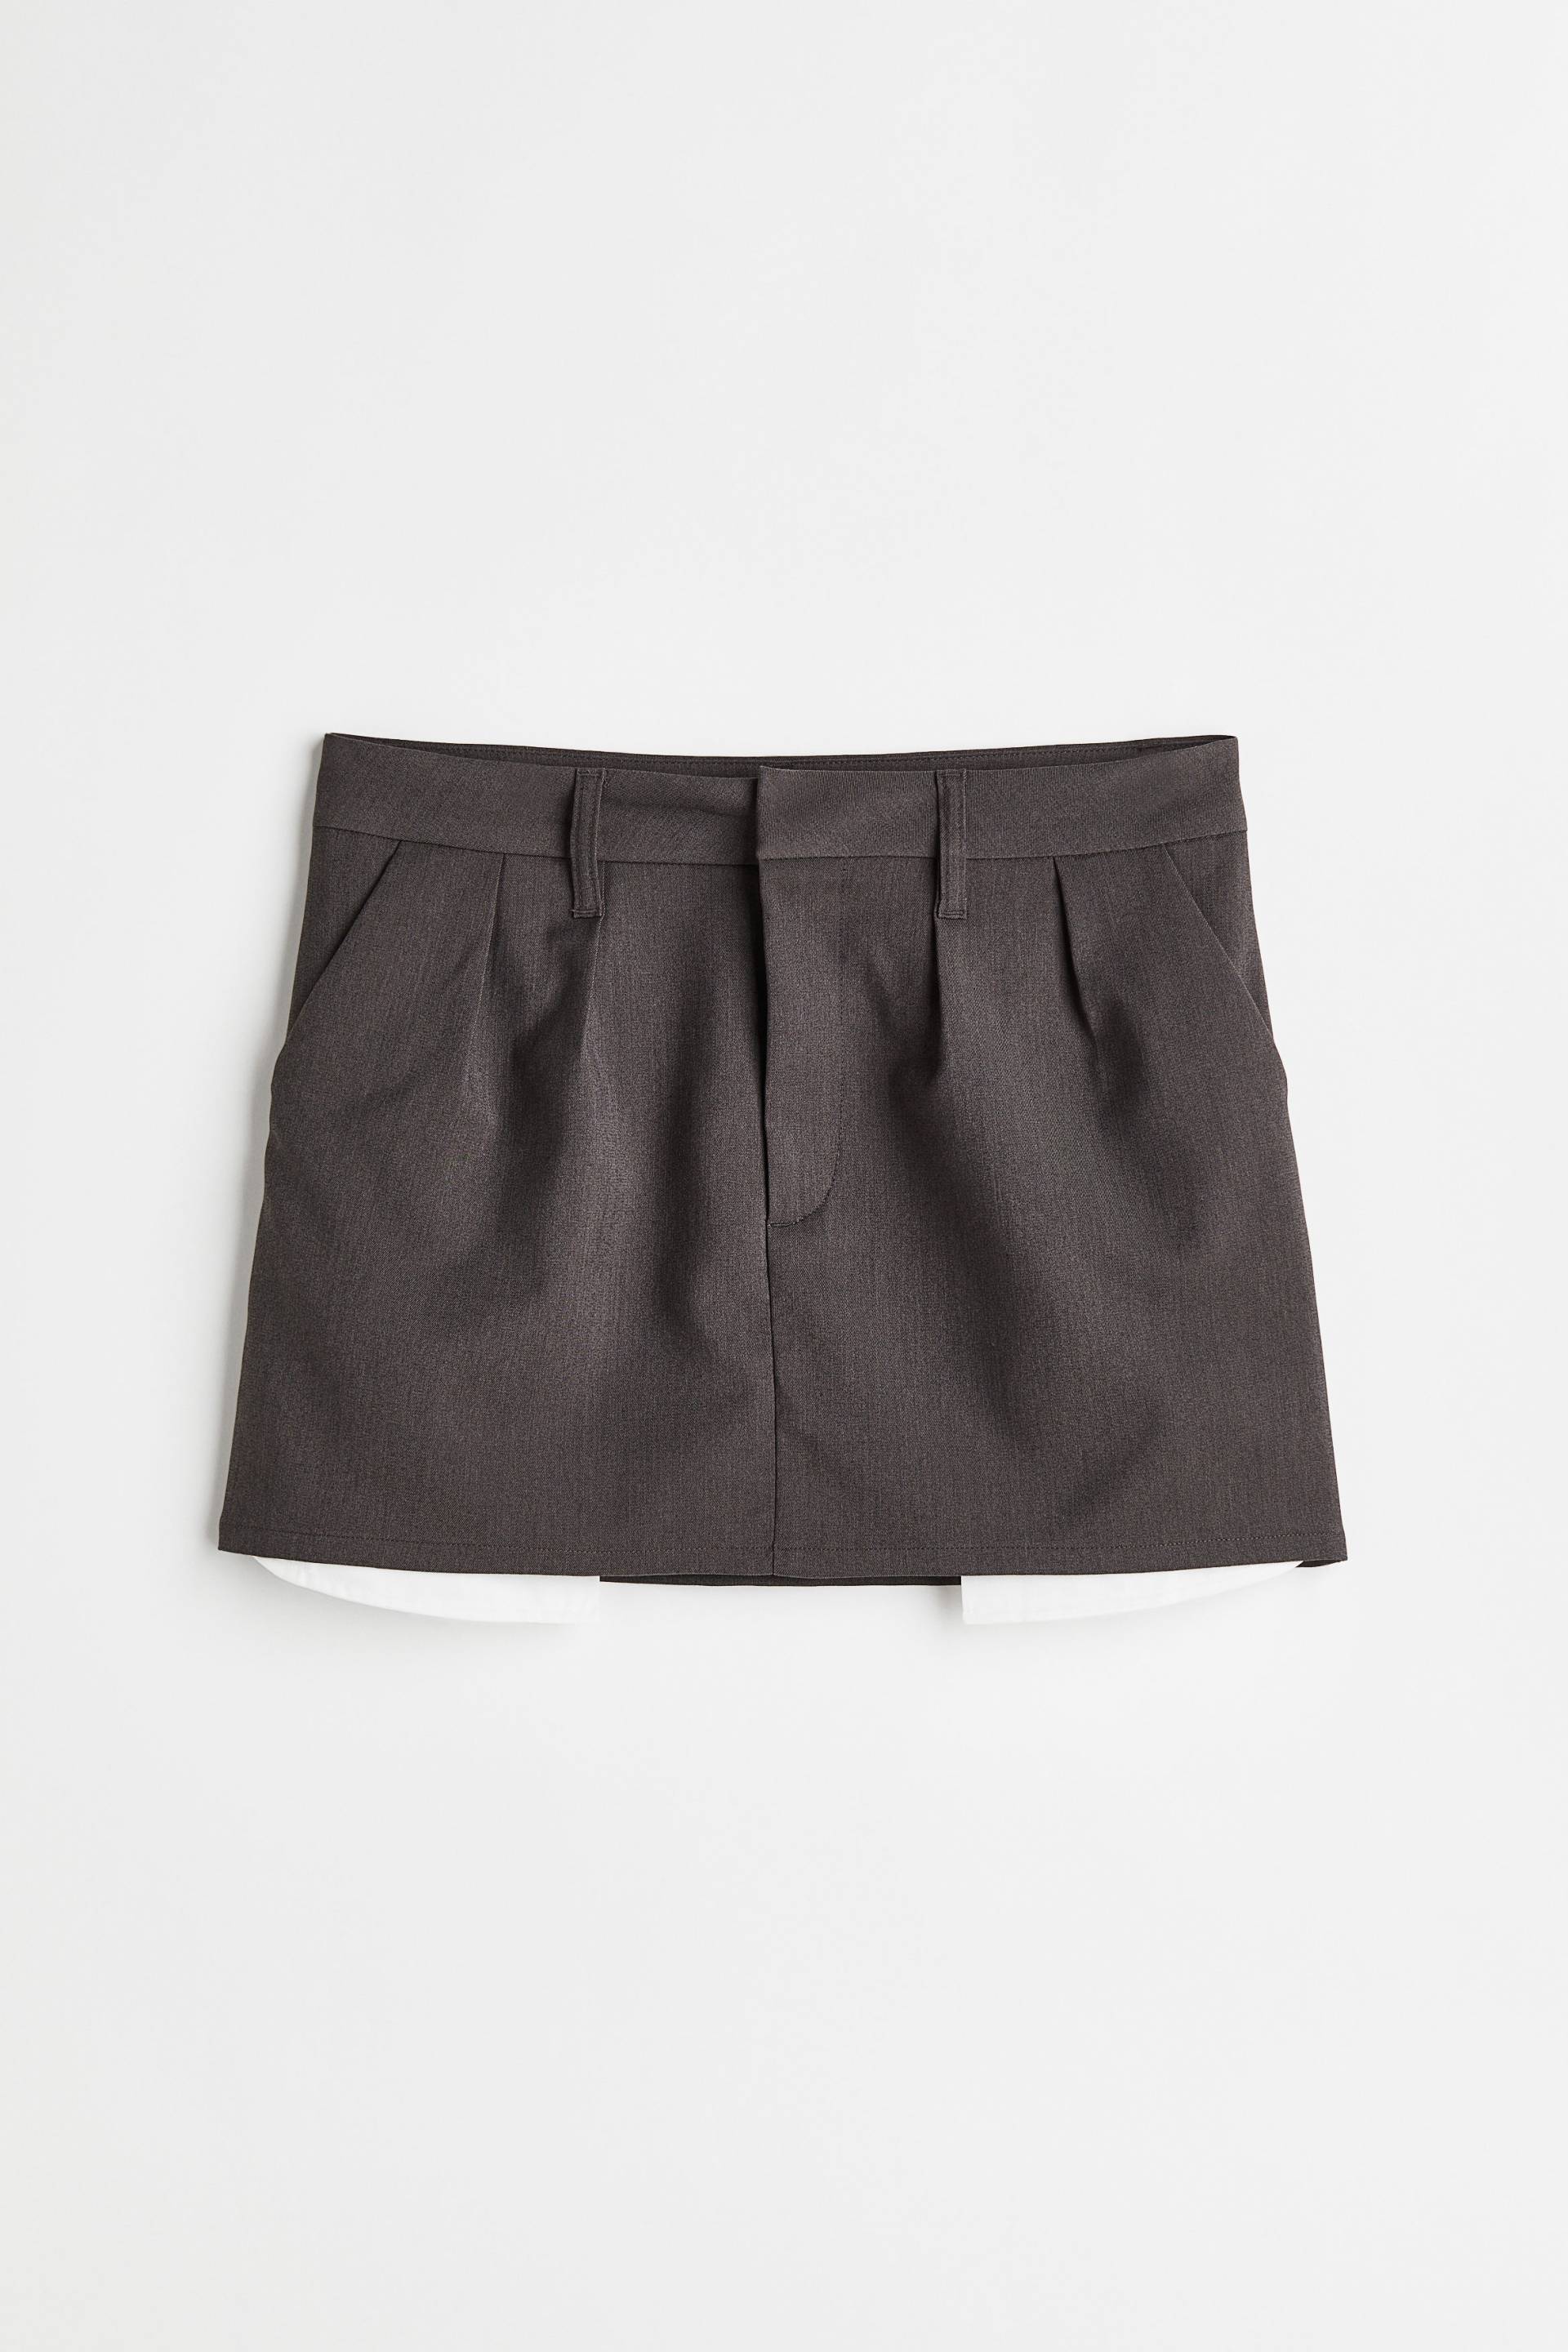 H&M Minirock Dunkelgrau, Röcke in Größe XL. Farbe: Dark grey von H&M